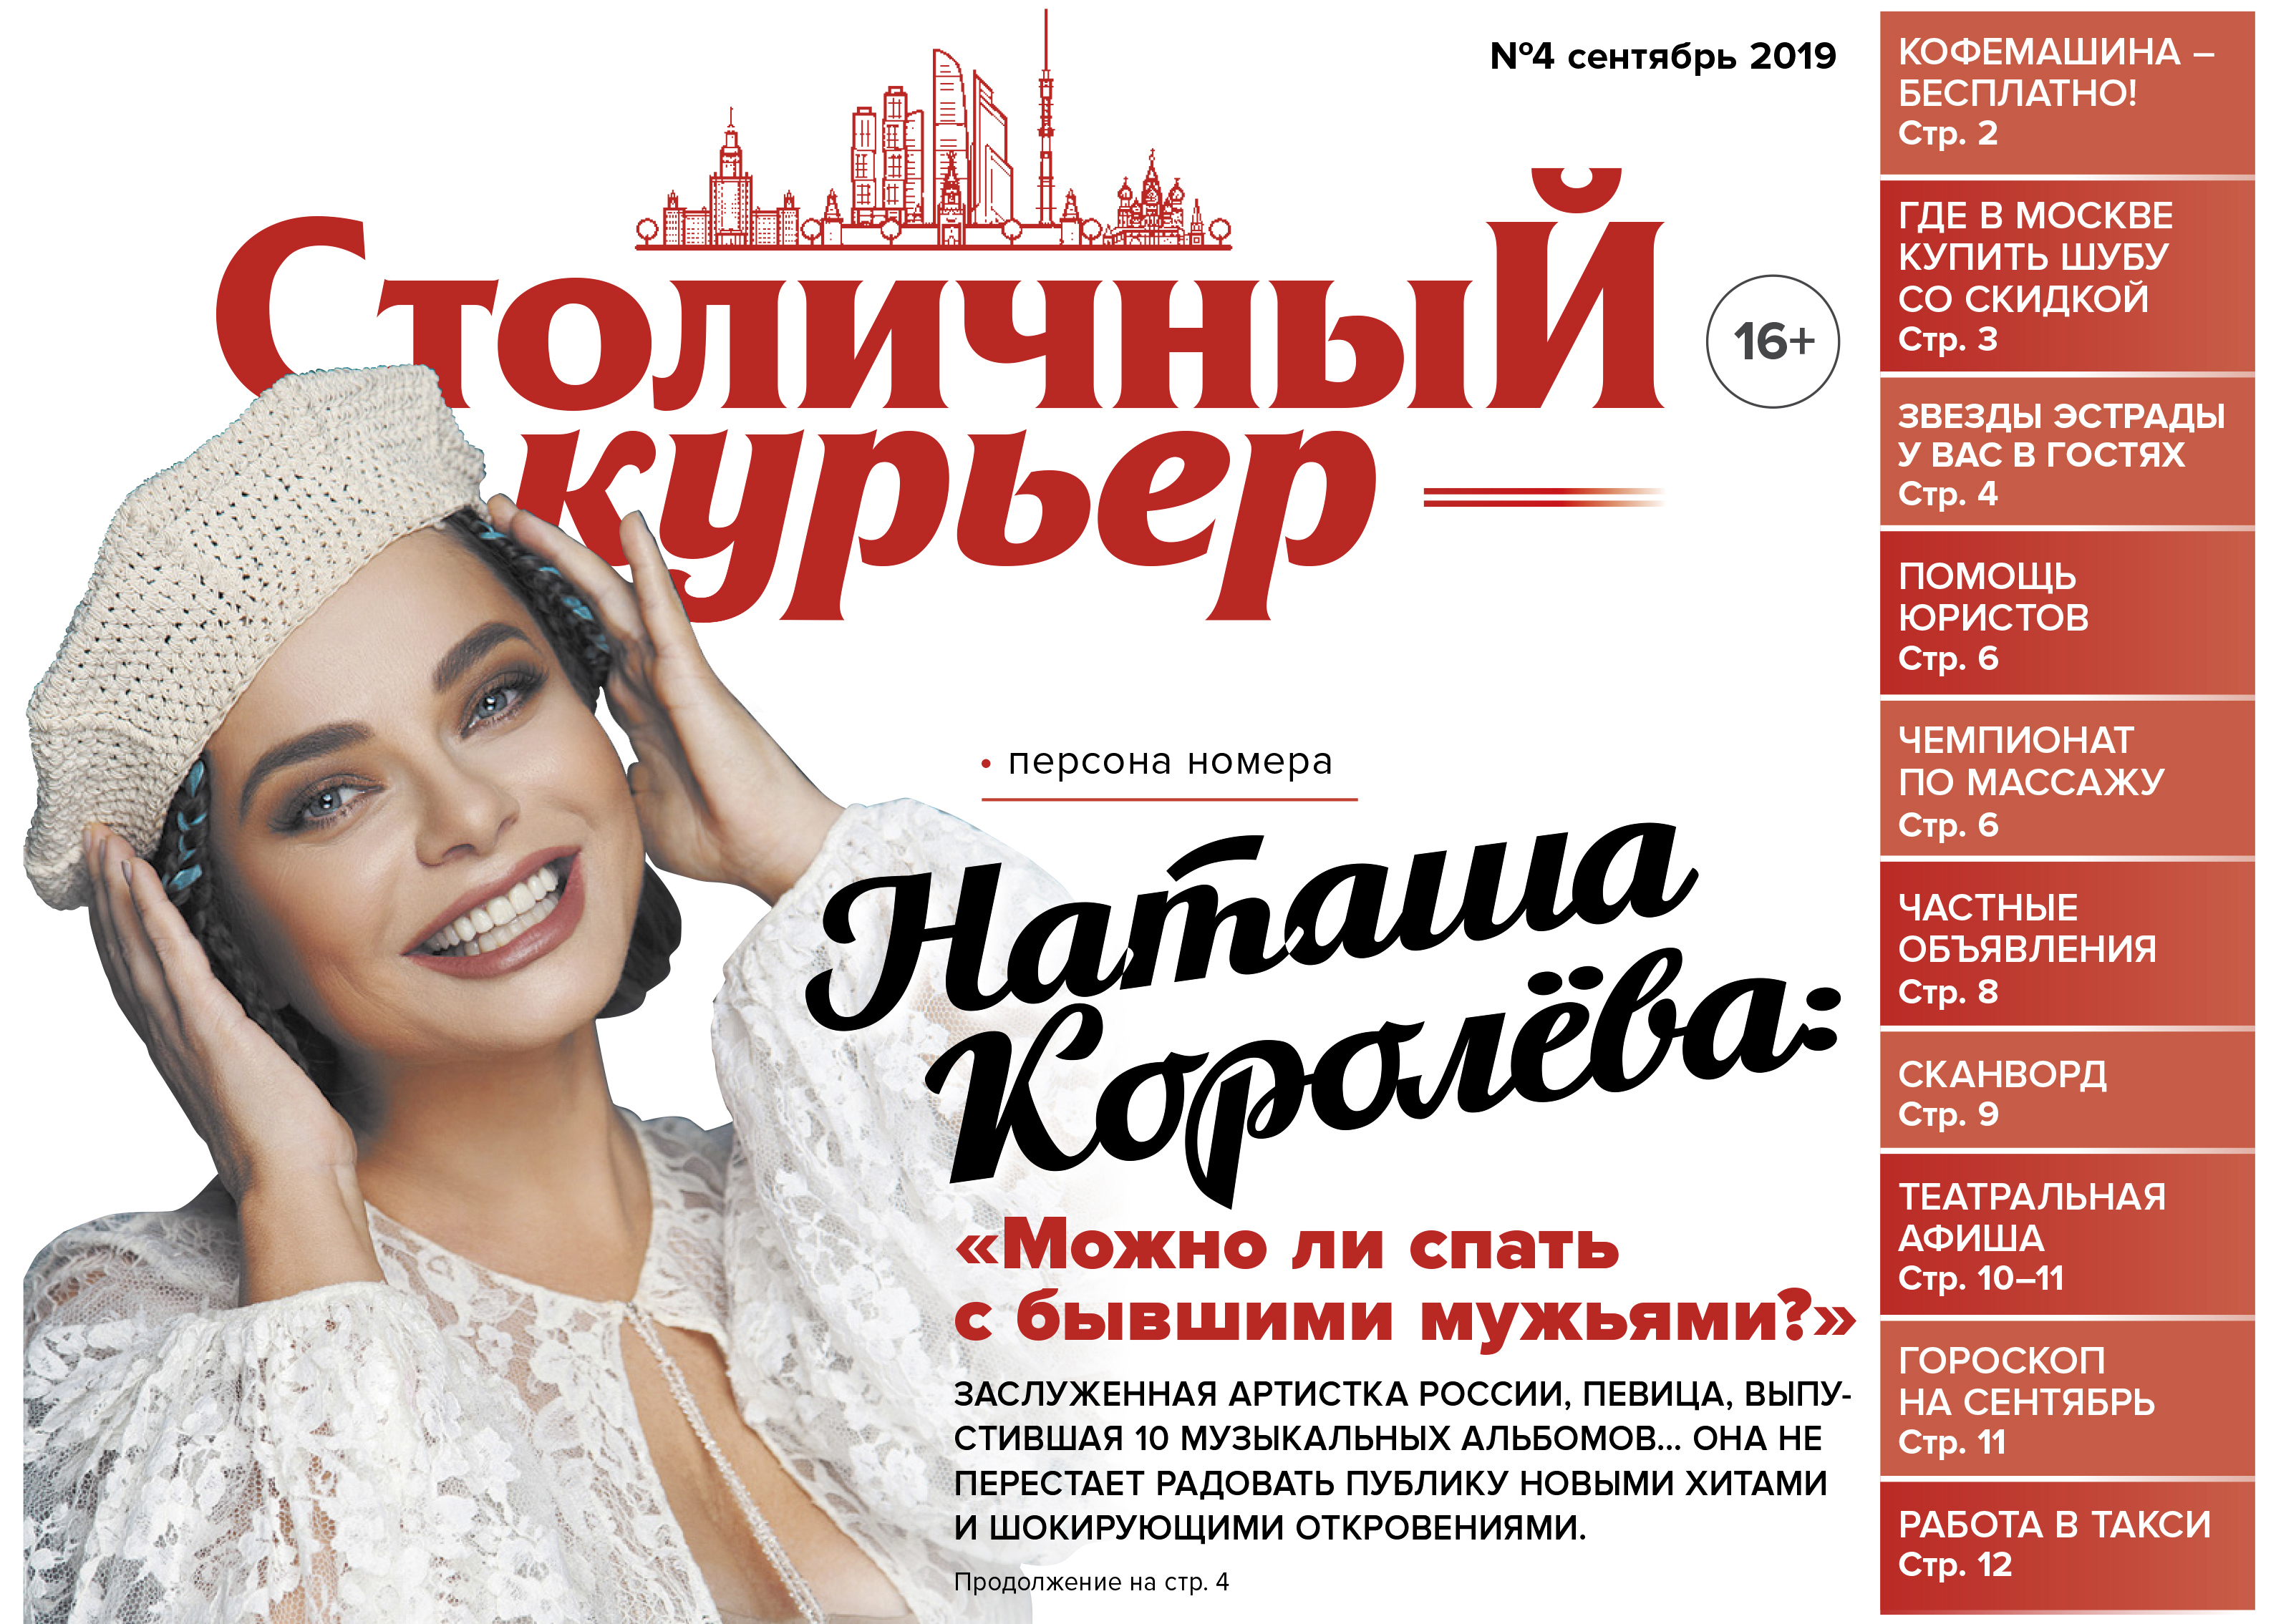 Наташа Королева стала лицом обложки нового номера газеты «Столичный курьер»